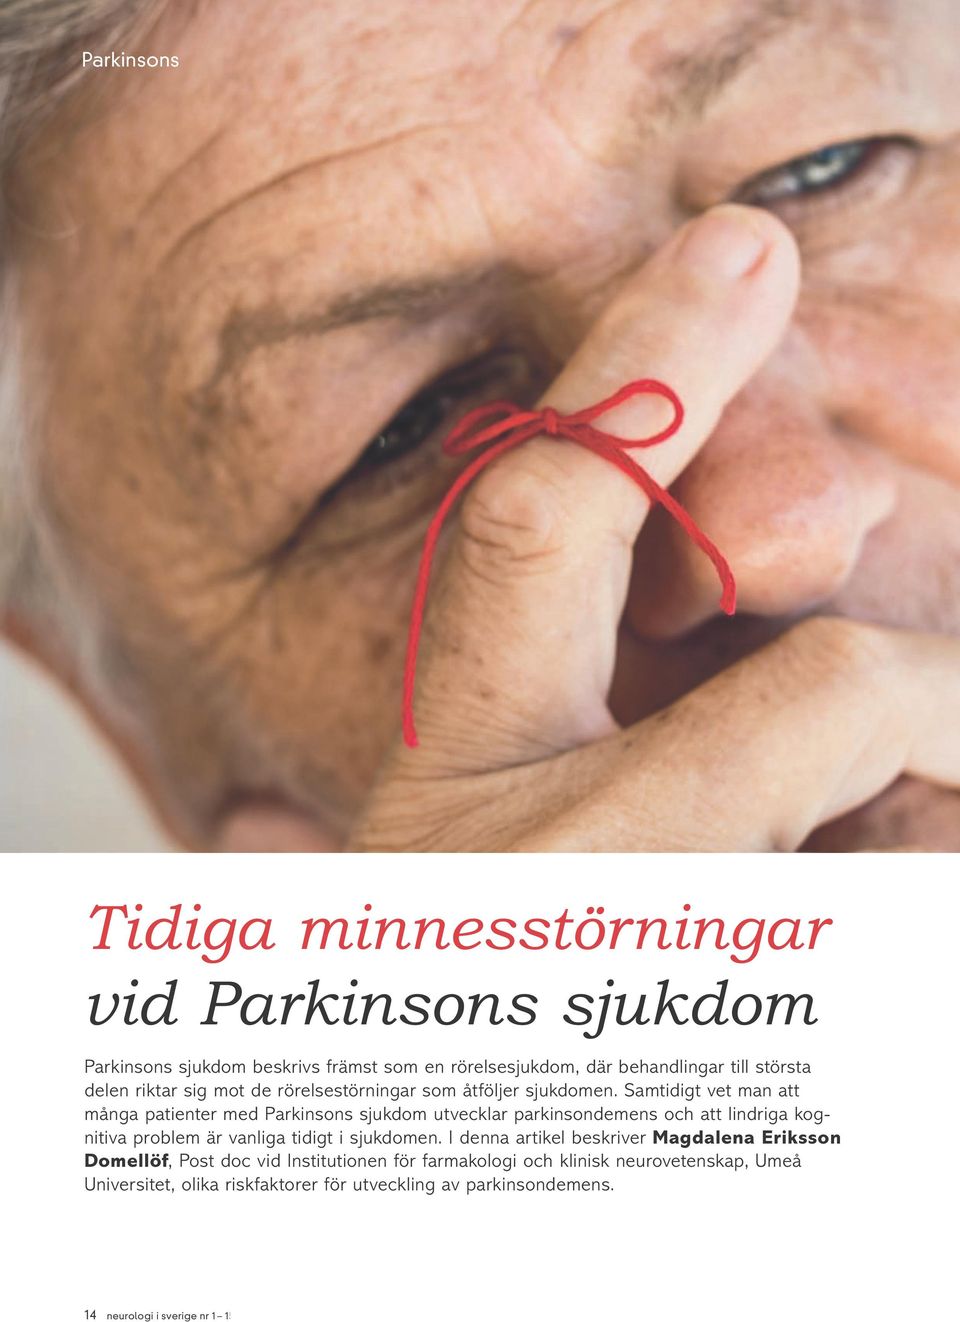 Samtidigt vet man att många patienter med Parkinsons sjukdom utvecklar parkinsondemens och att lindriga kognitiva problem är vanliga tidigt i